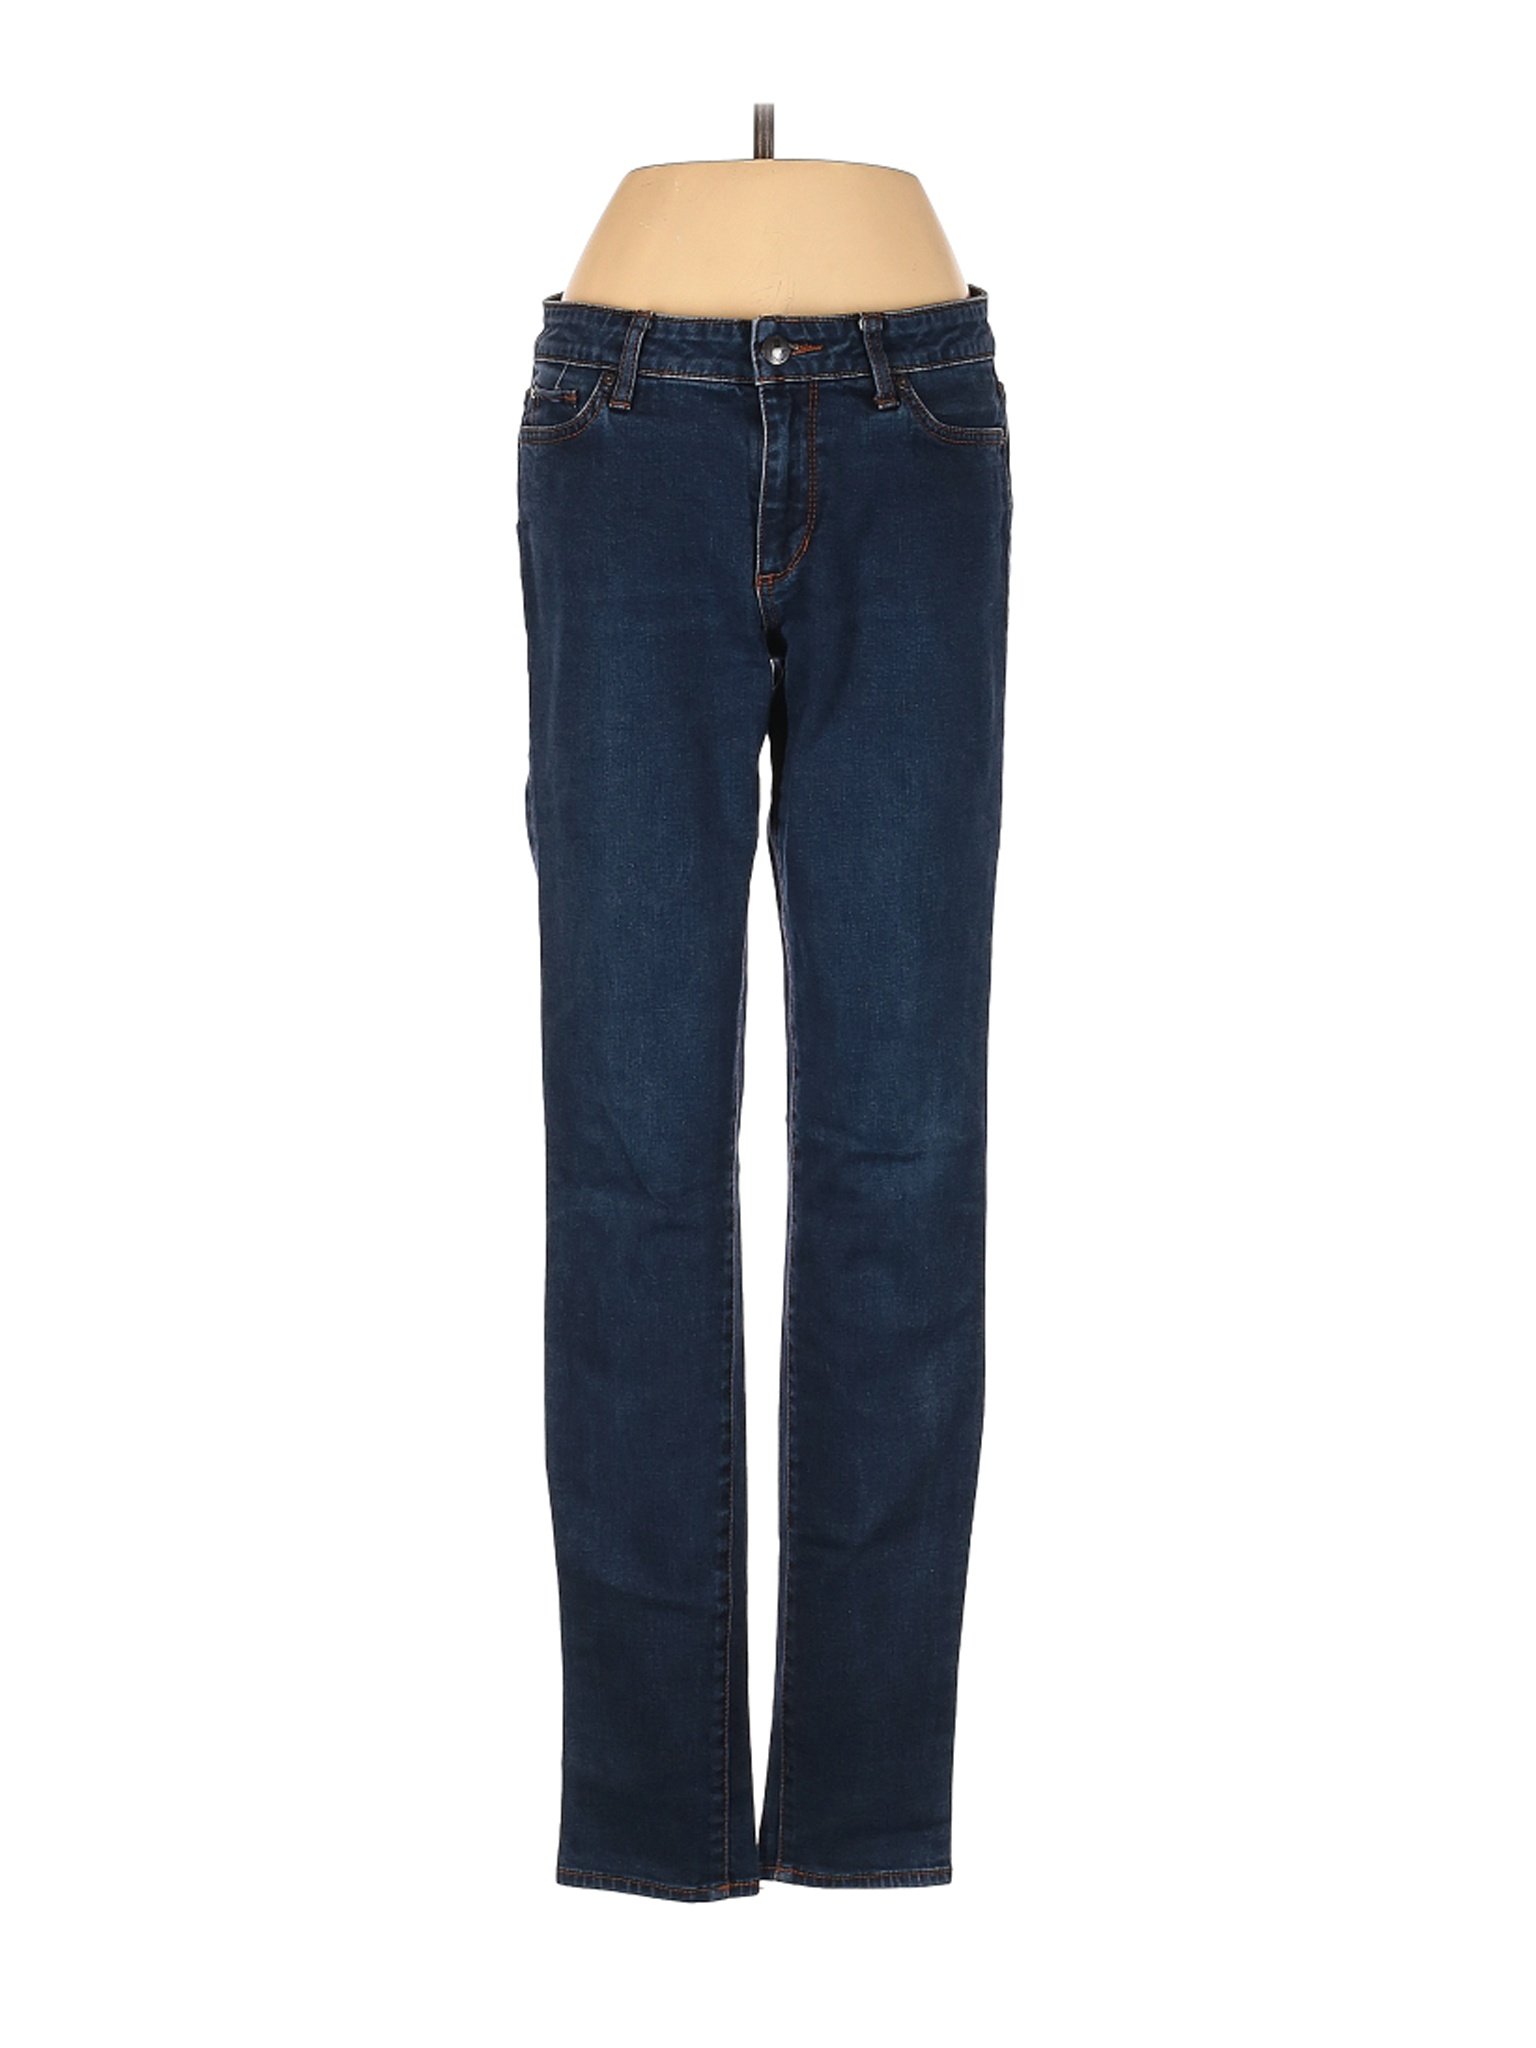 Else Jeans Women Blue Jeans 27W | eBay